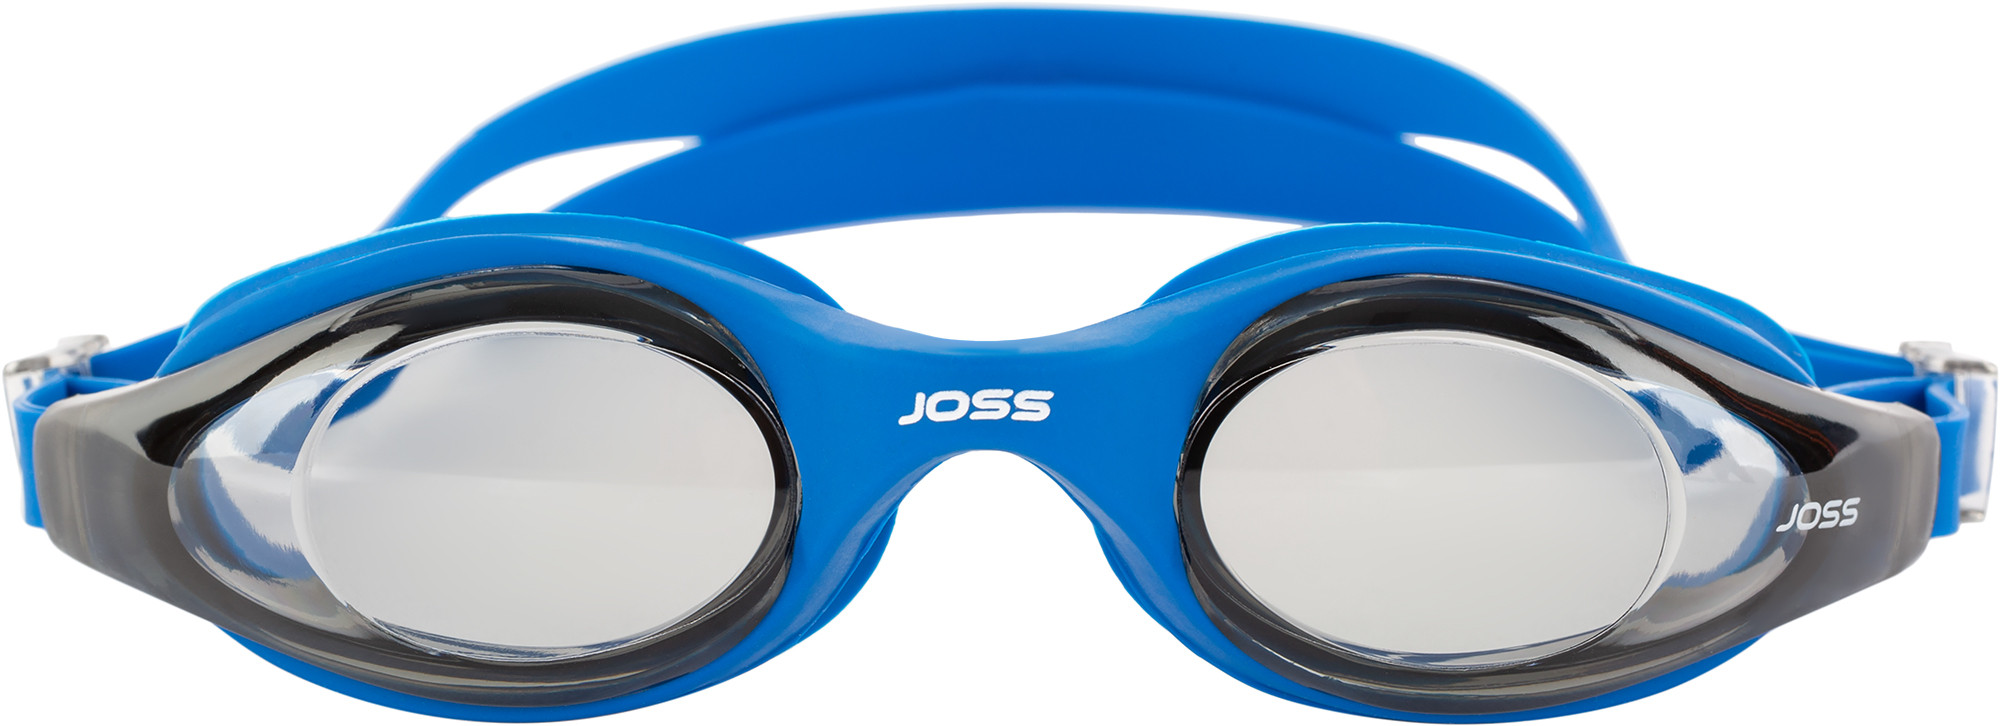 Окуляри для плавання Joss Triton